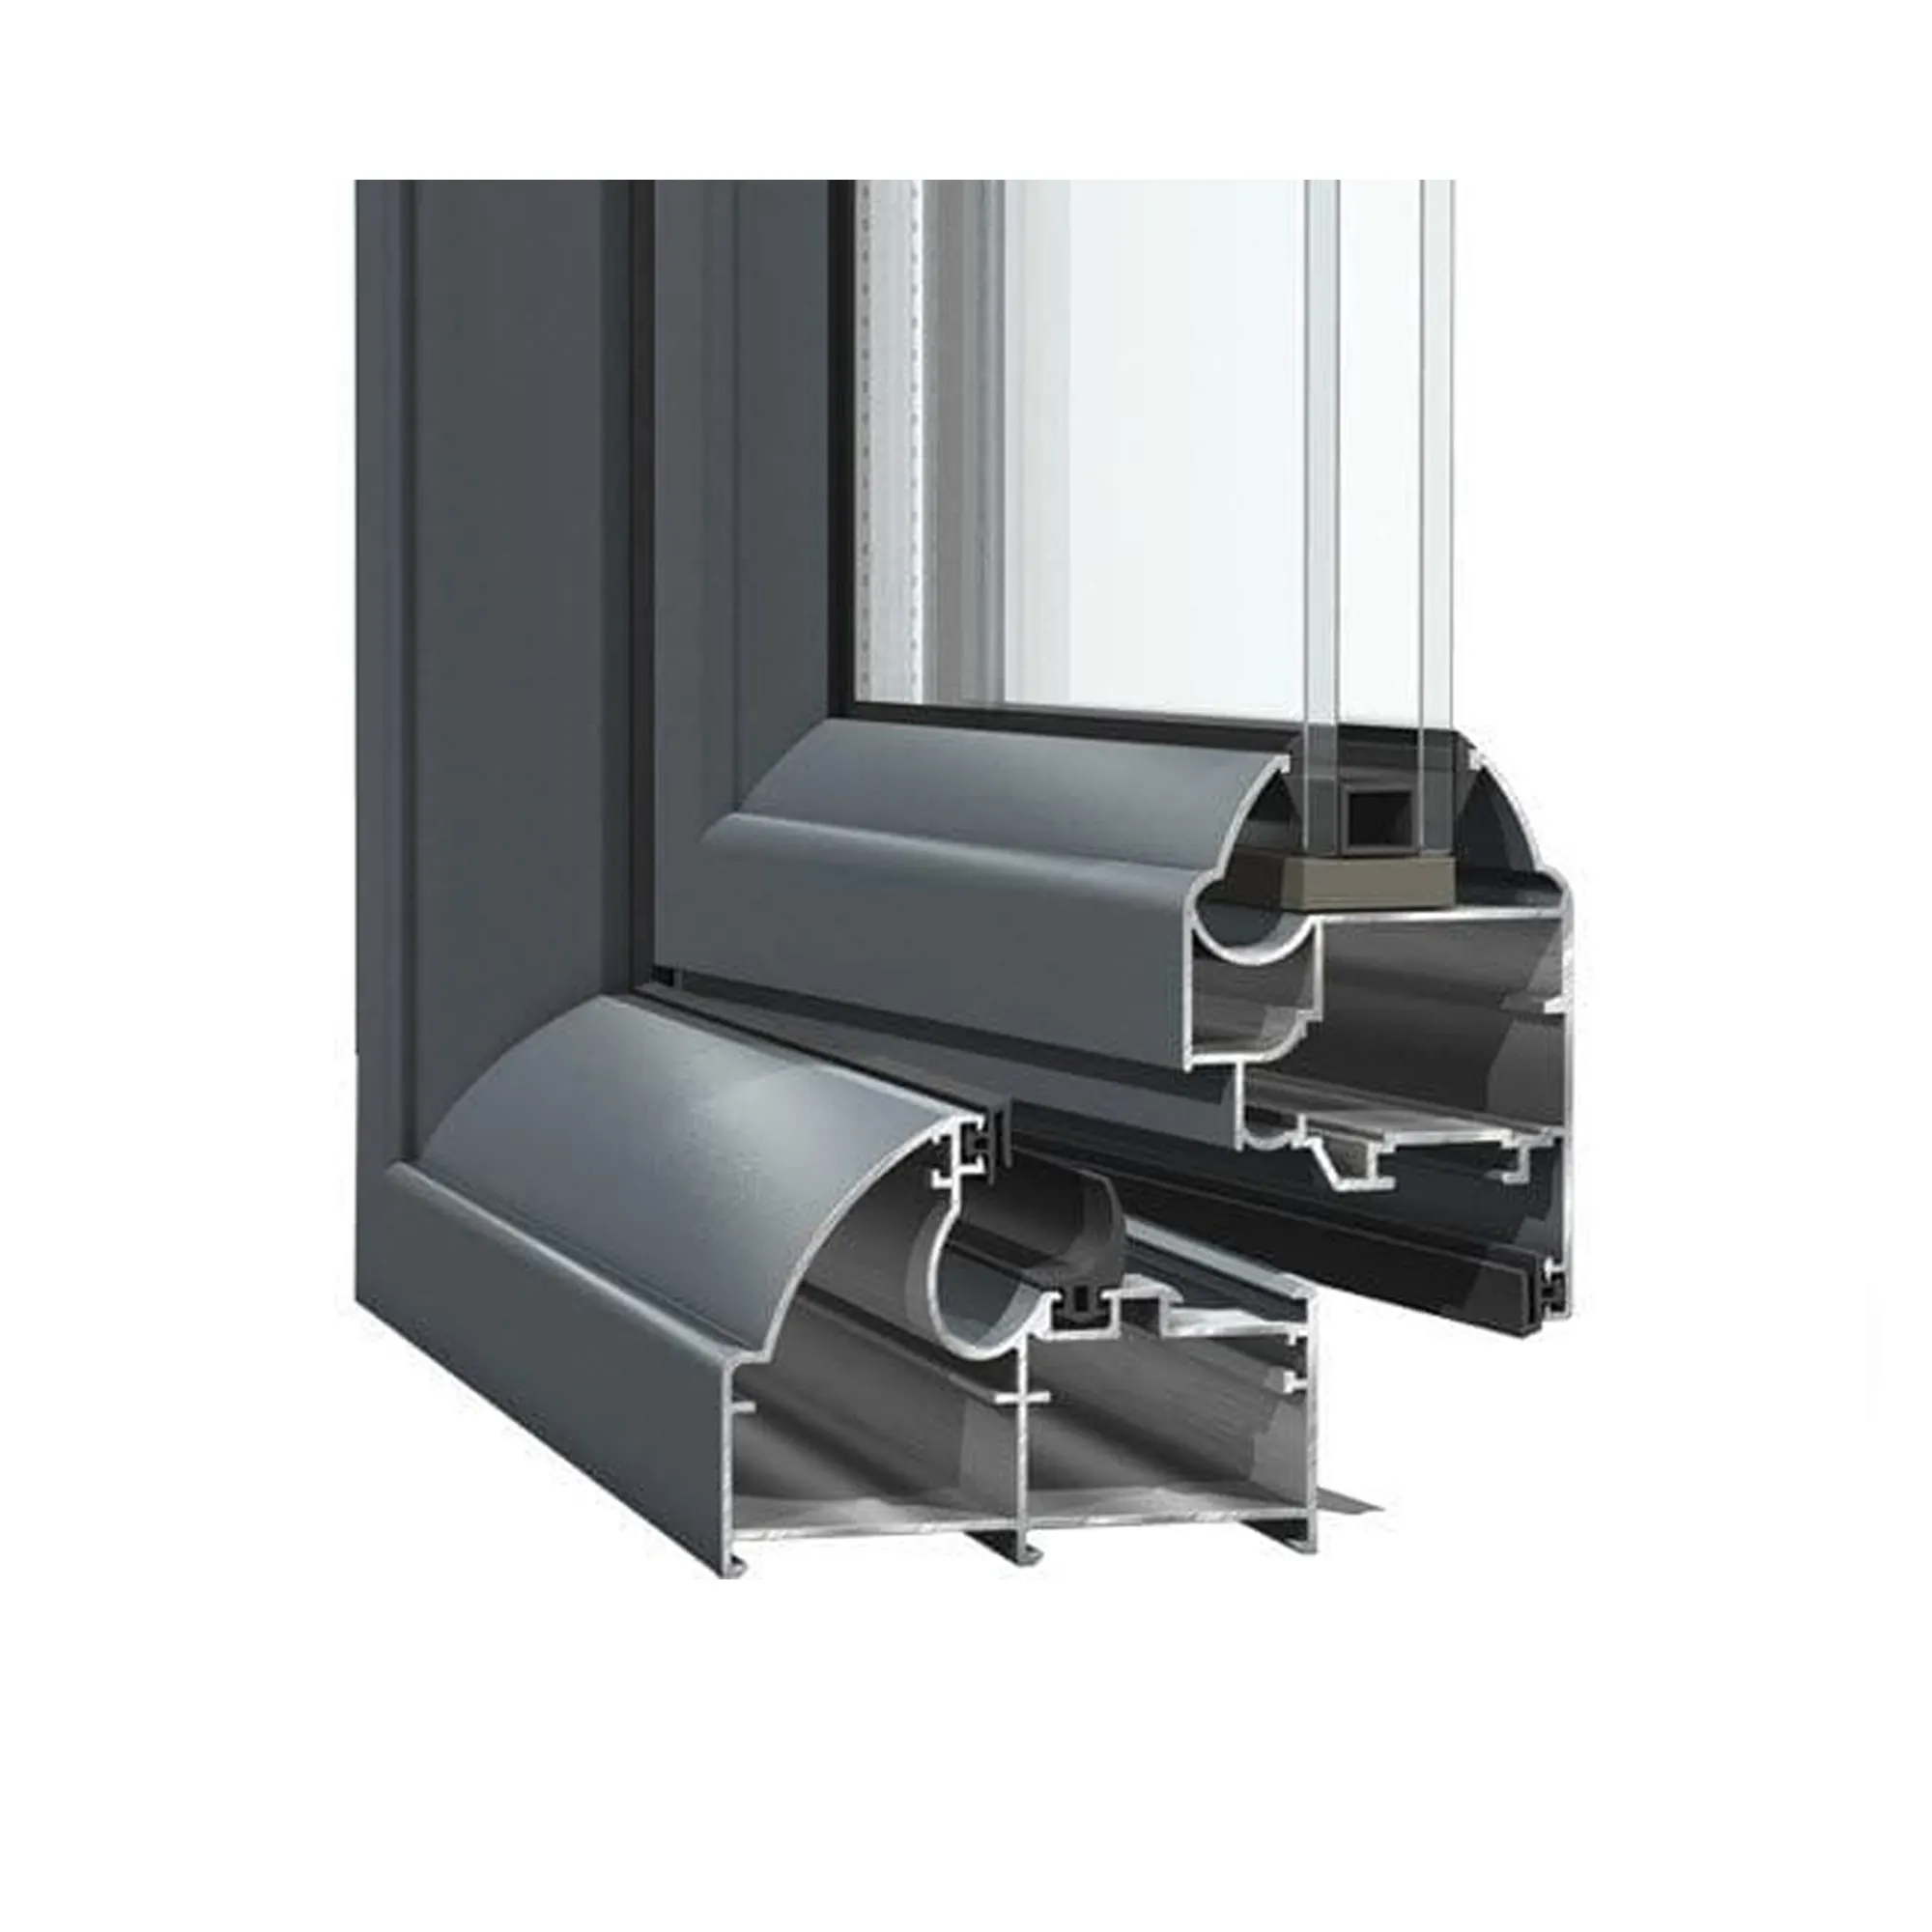 Venta al por mayor de materiales de construcción anodizado plata ventana puerta perfil de aluminio